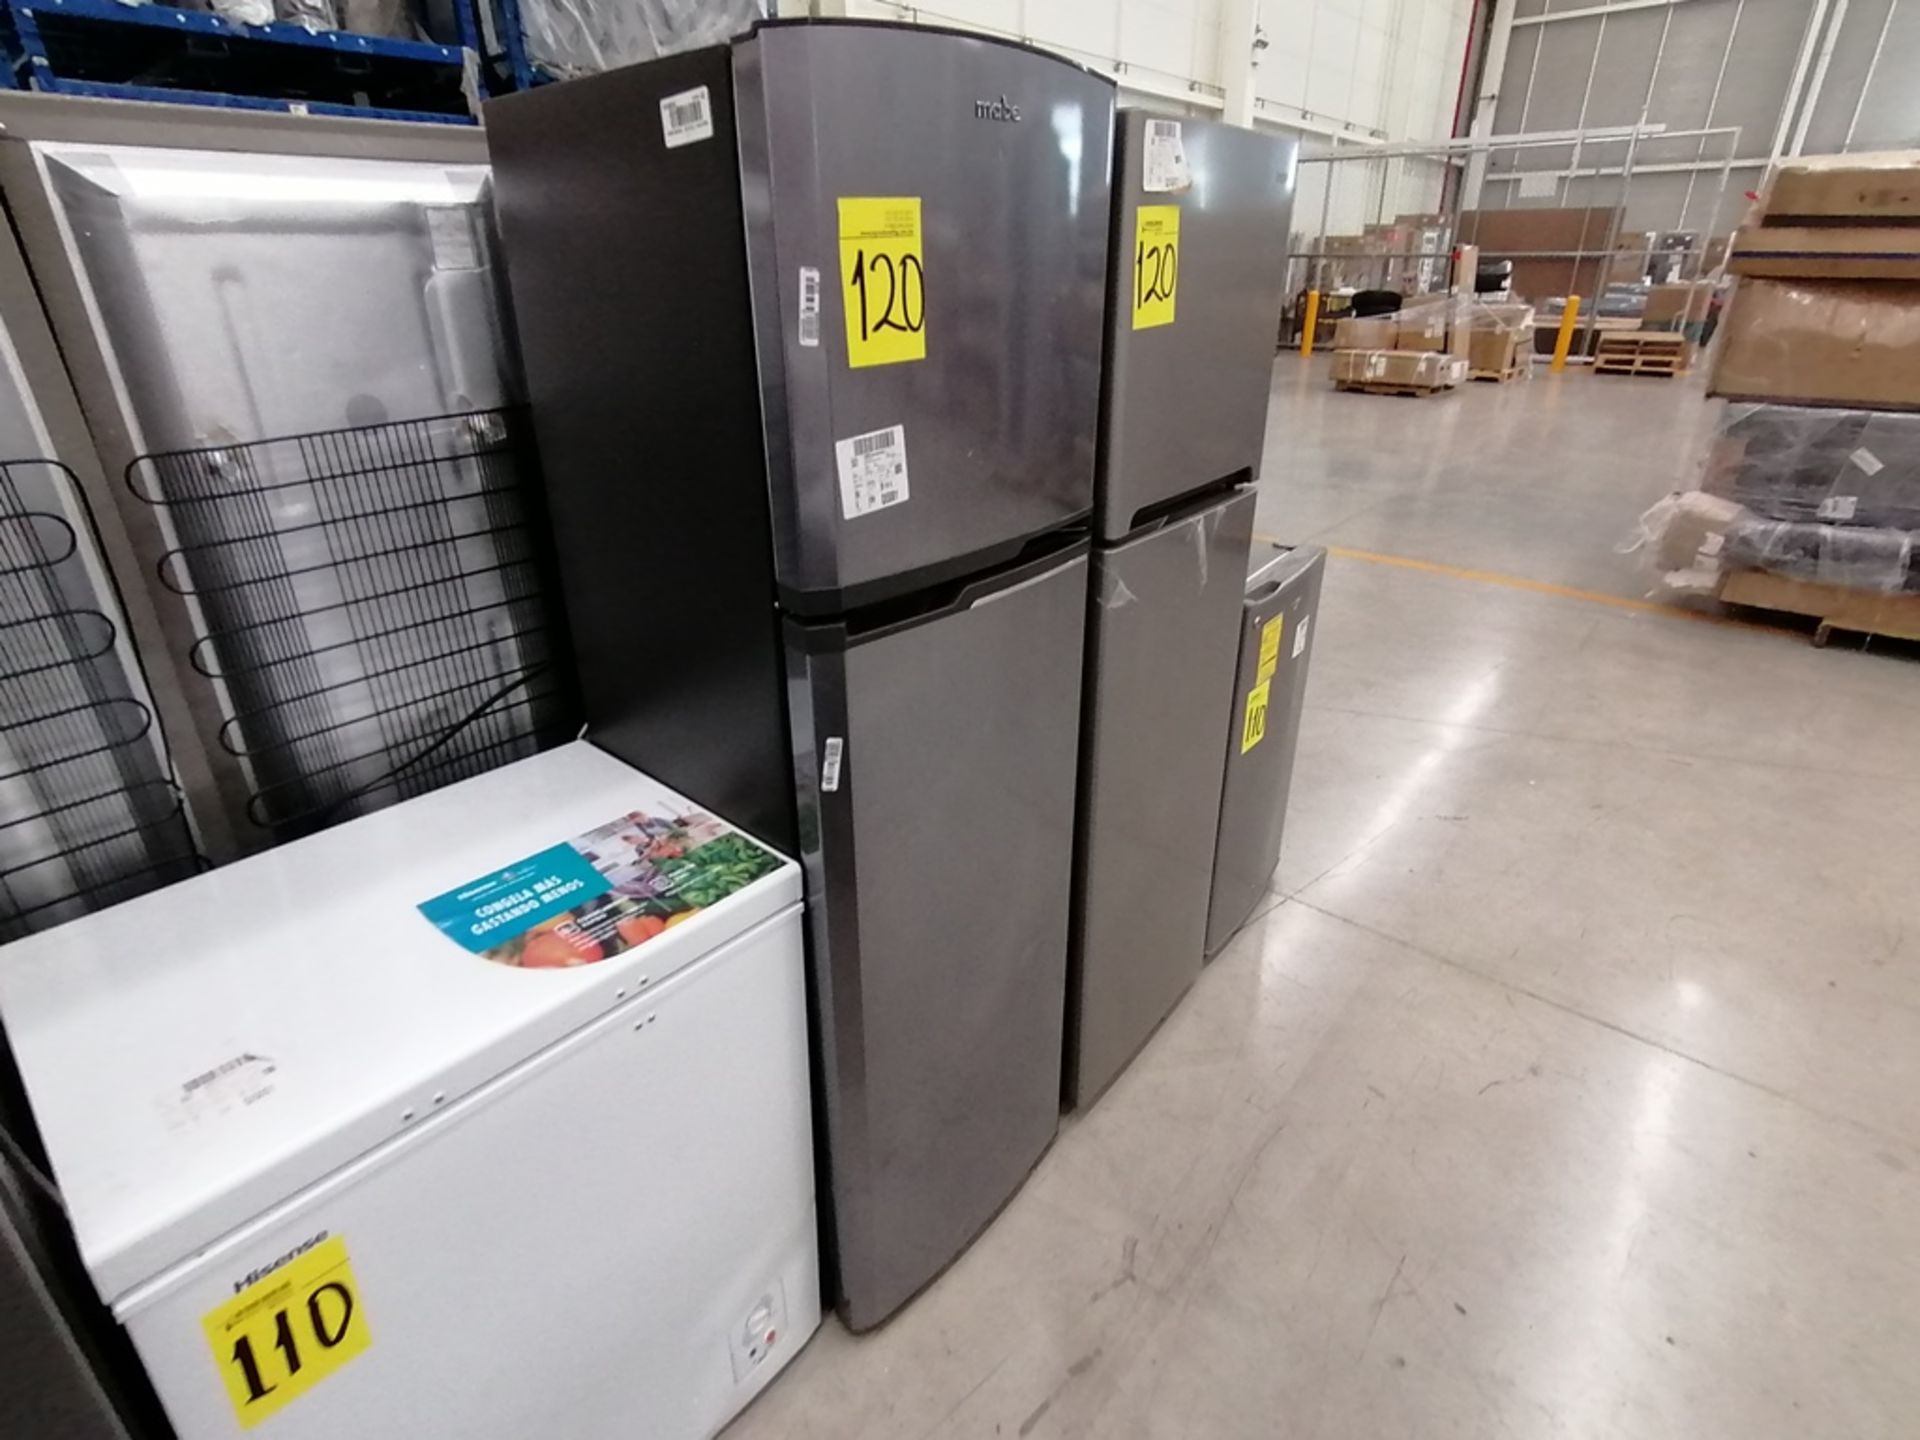 Lote de 2 refrigeradores incluye: 1 Refrigerador, Marca Mabe, Modelo RMA1025VNX, Serie 2110B623189, - Image 10 of 17